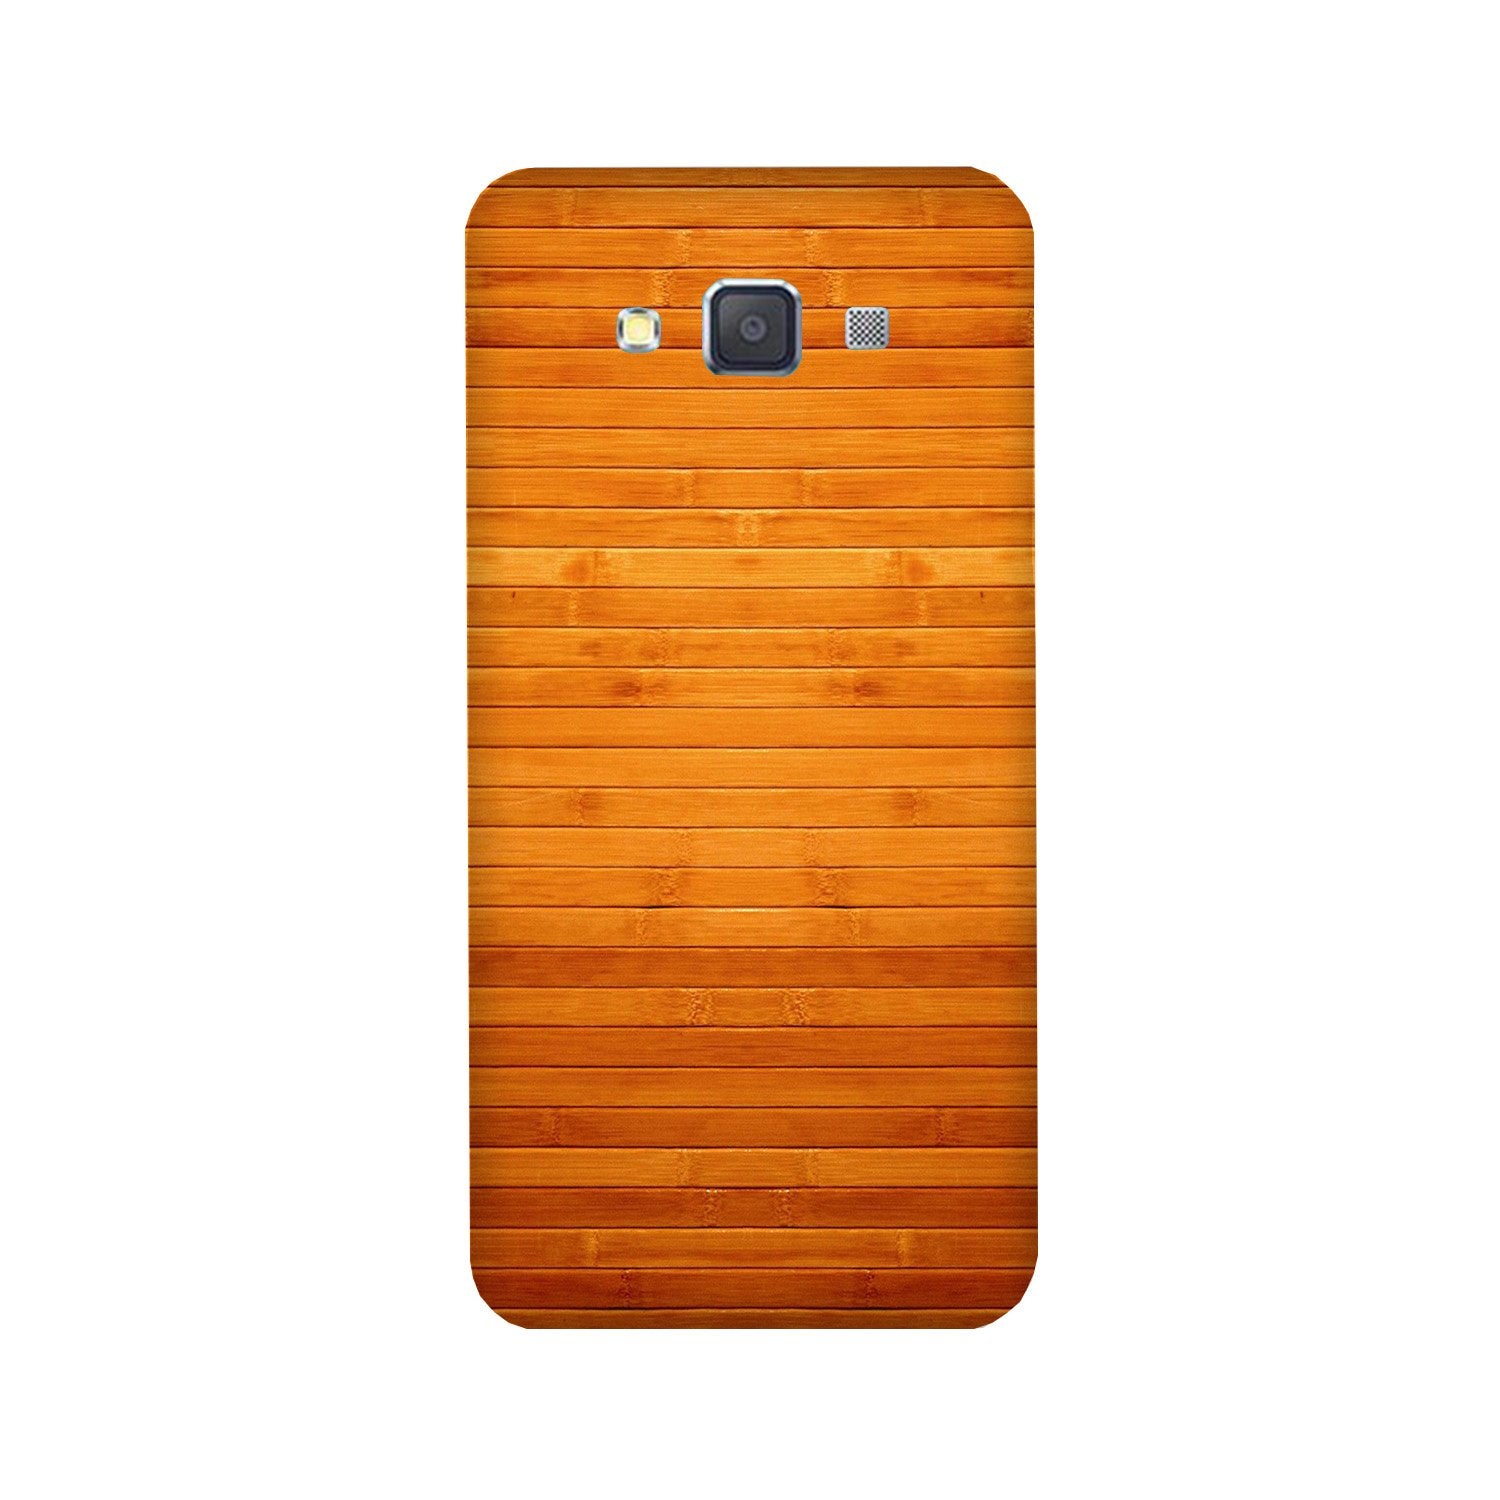 Wooden Look Case for Galaxy E5(Design - 111)